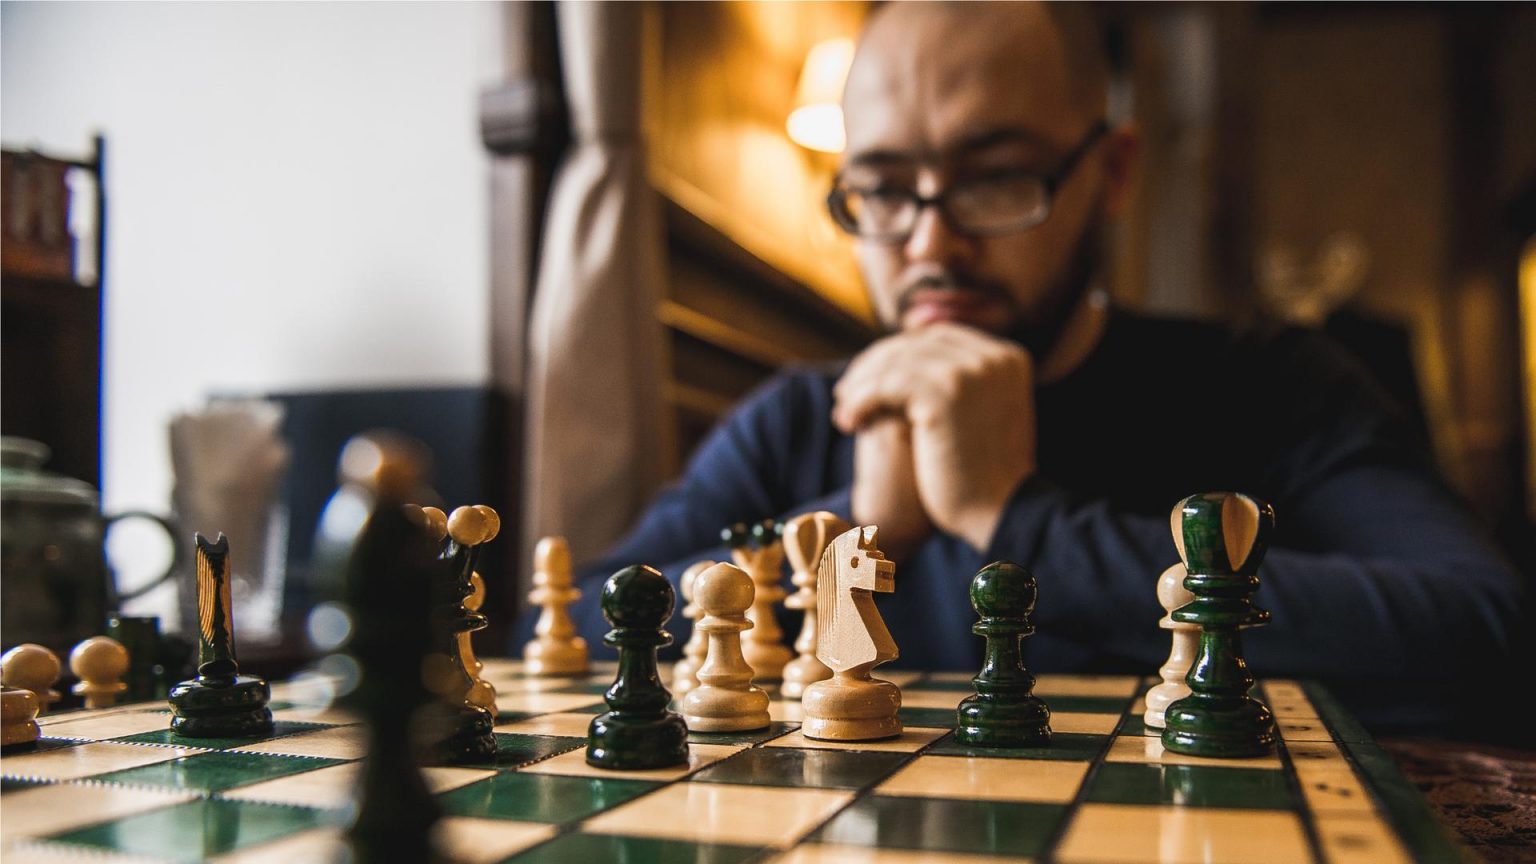 Aprendizado continuo e o xadrez